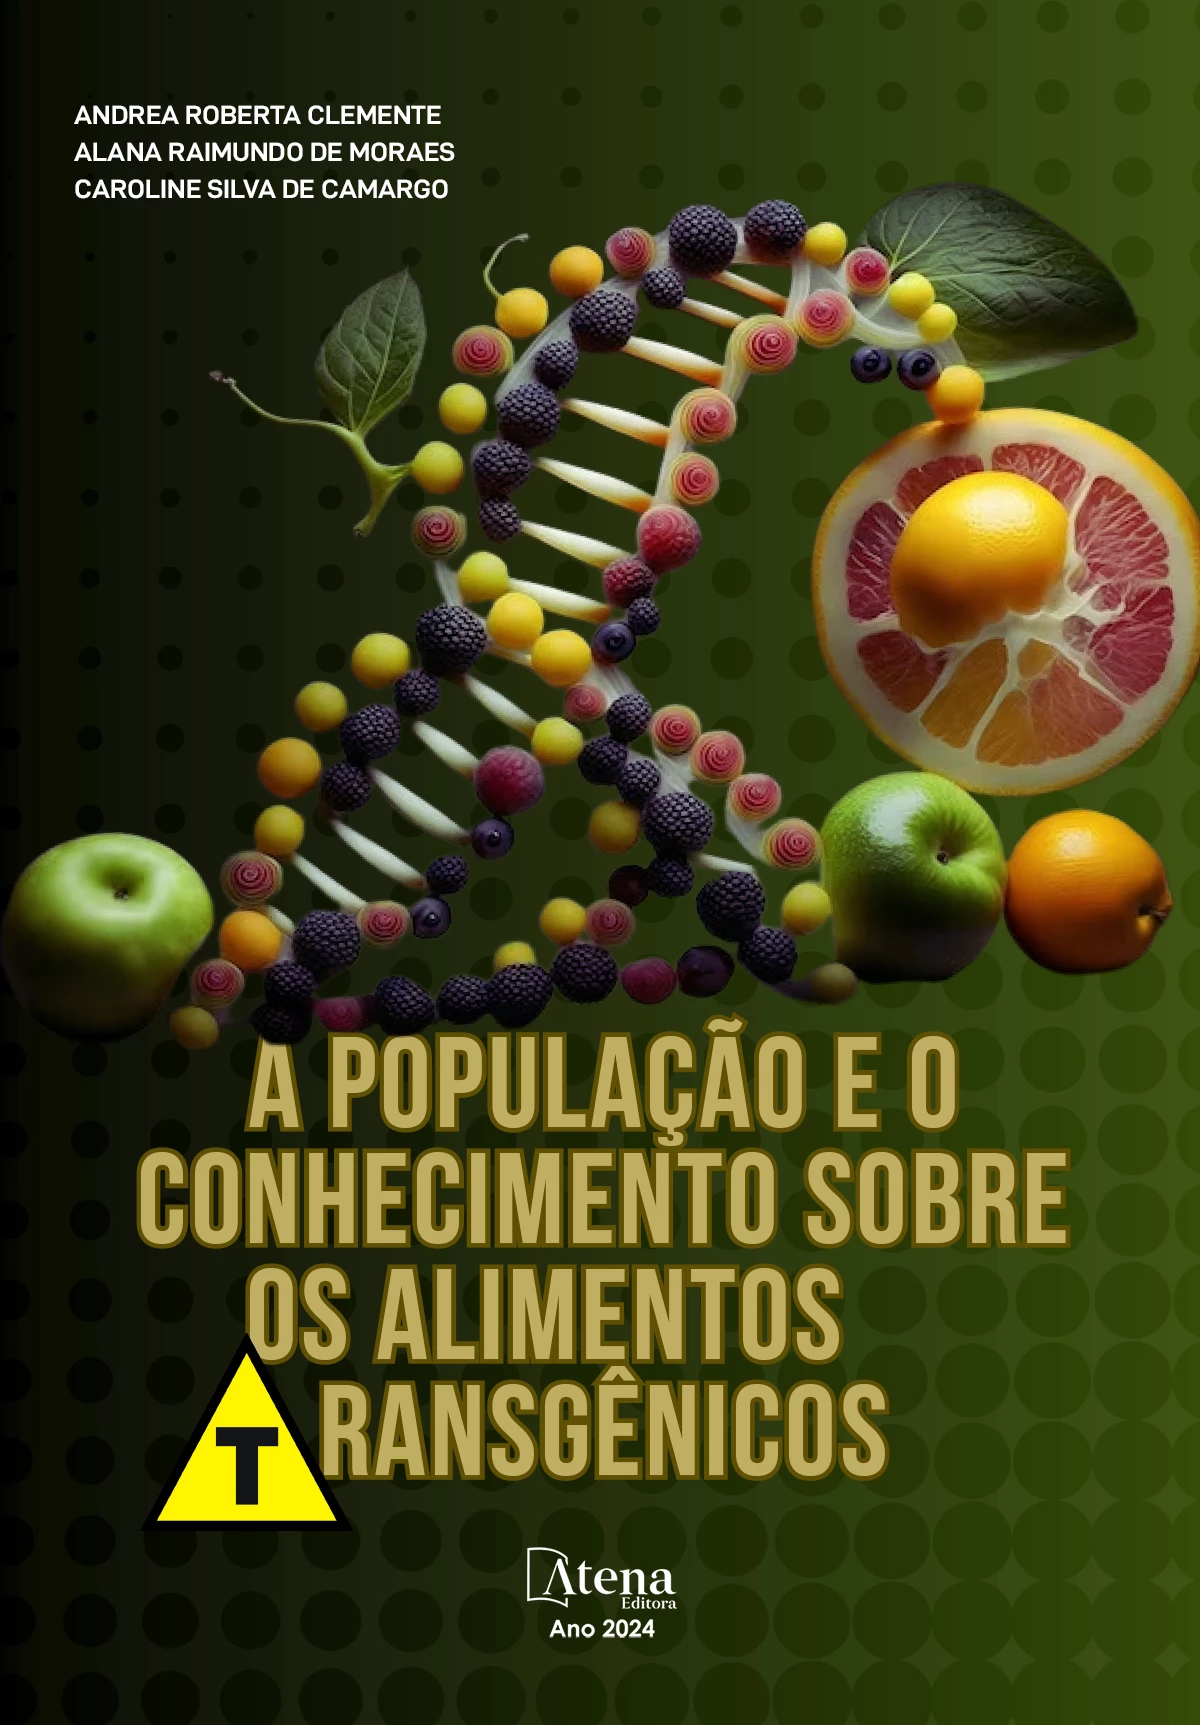 capa do ebook A população e o conhecimento sobre alimentos geneticamente modificados